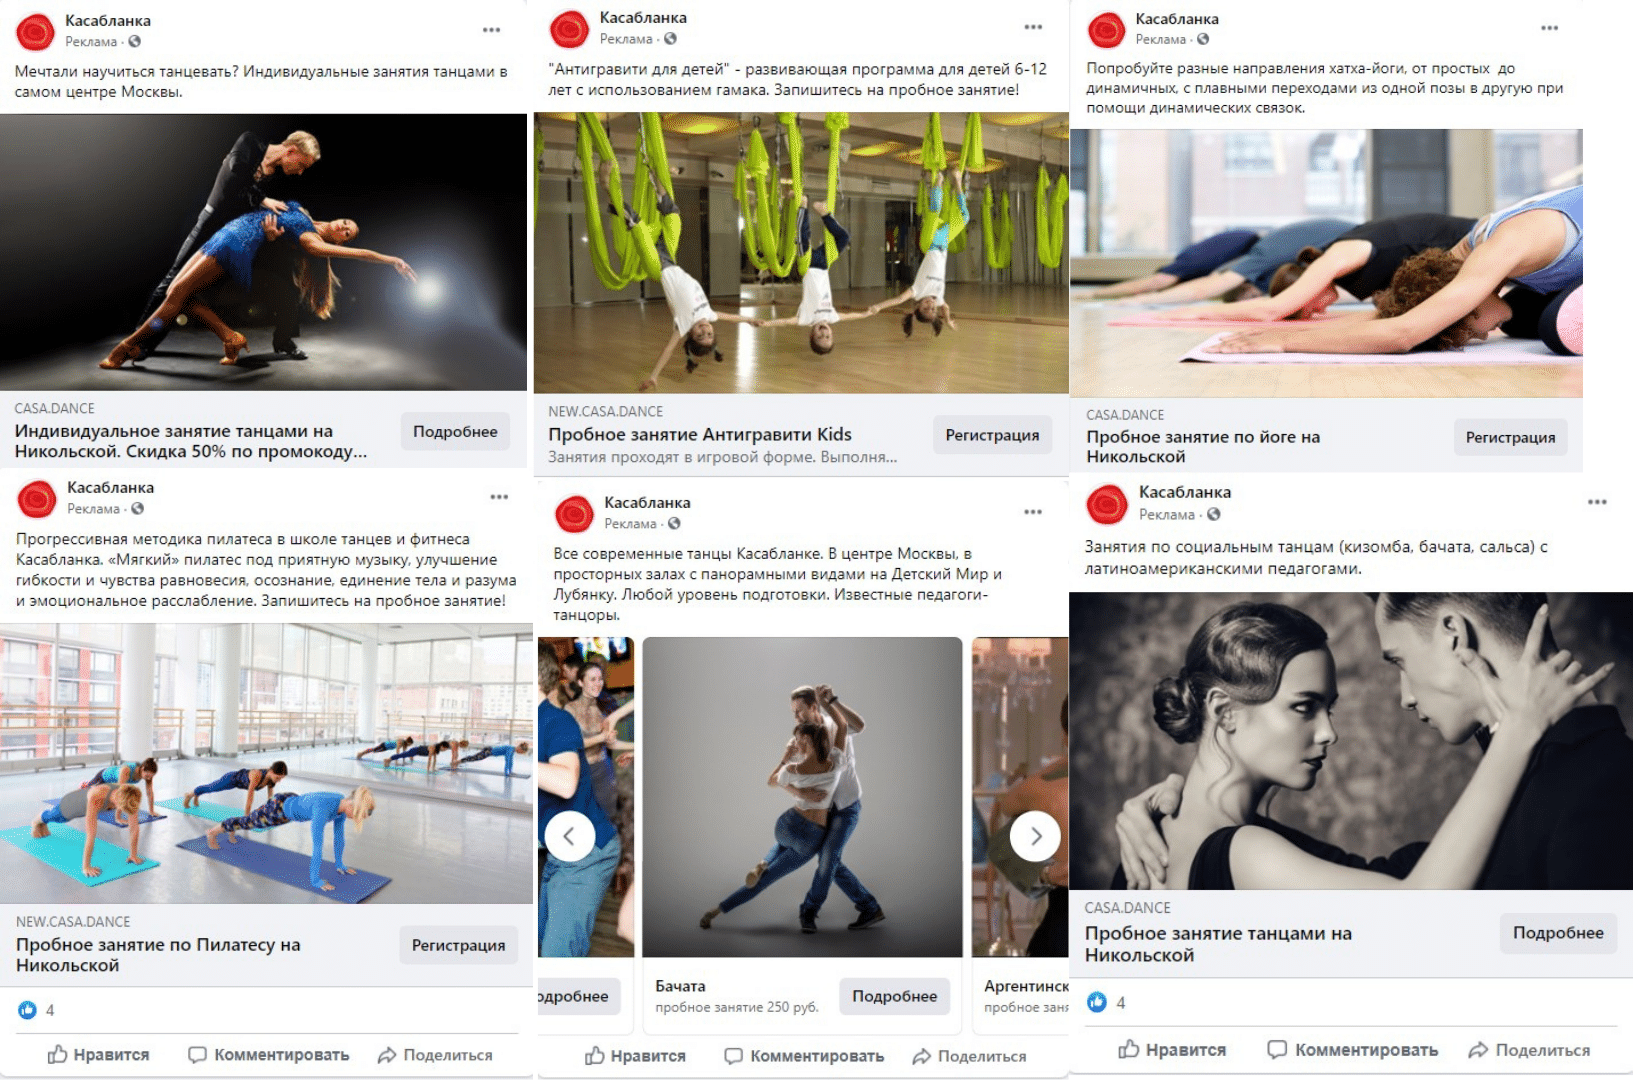 креативы в facebook для танцевальной школы Касабланка